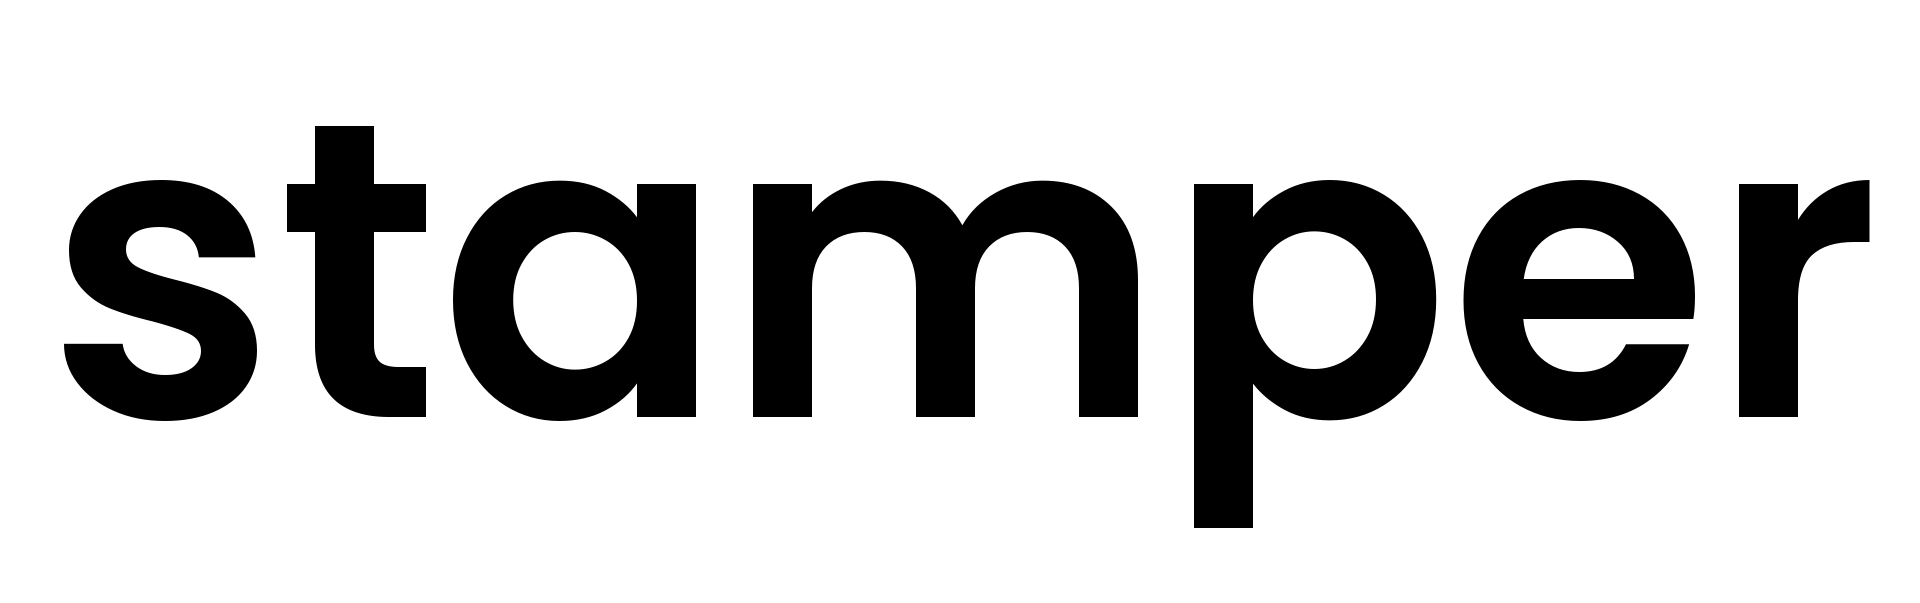 stamper logo